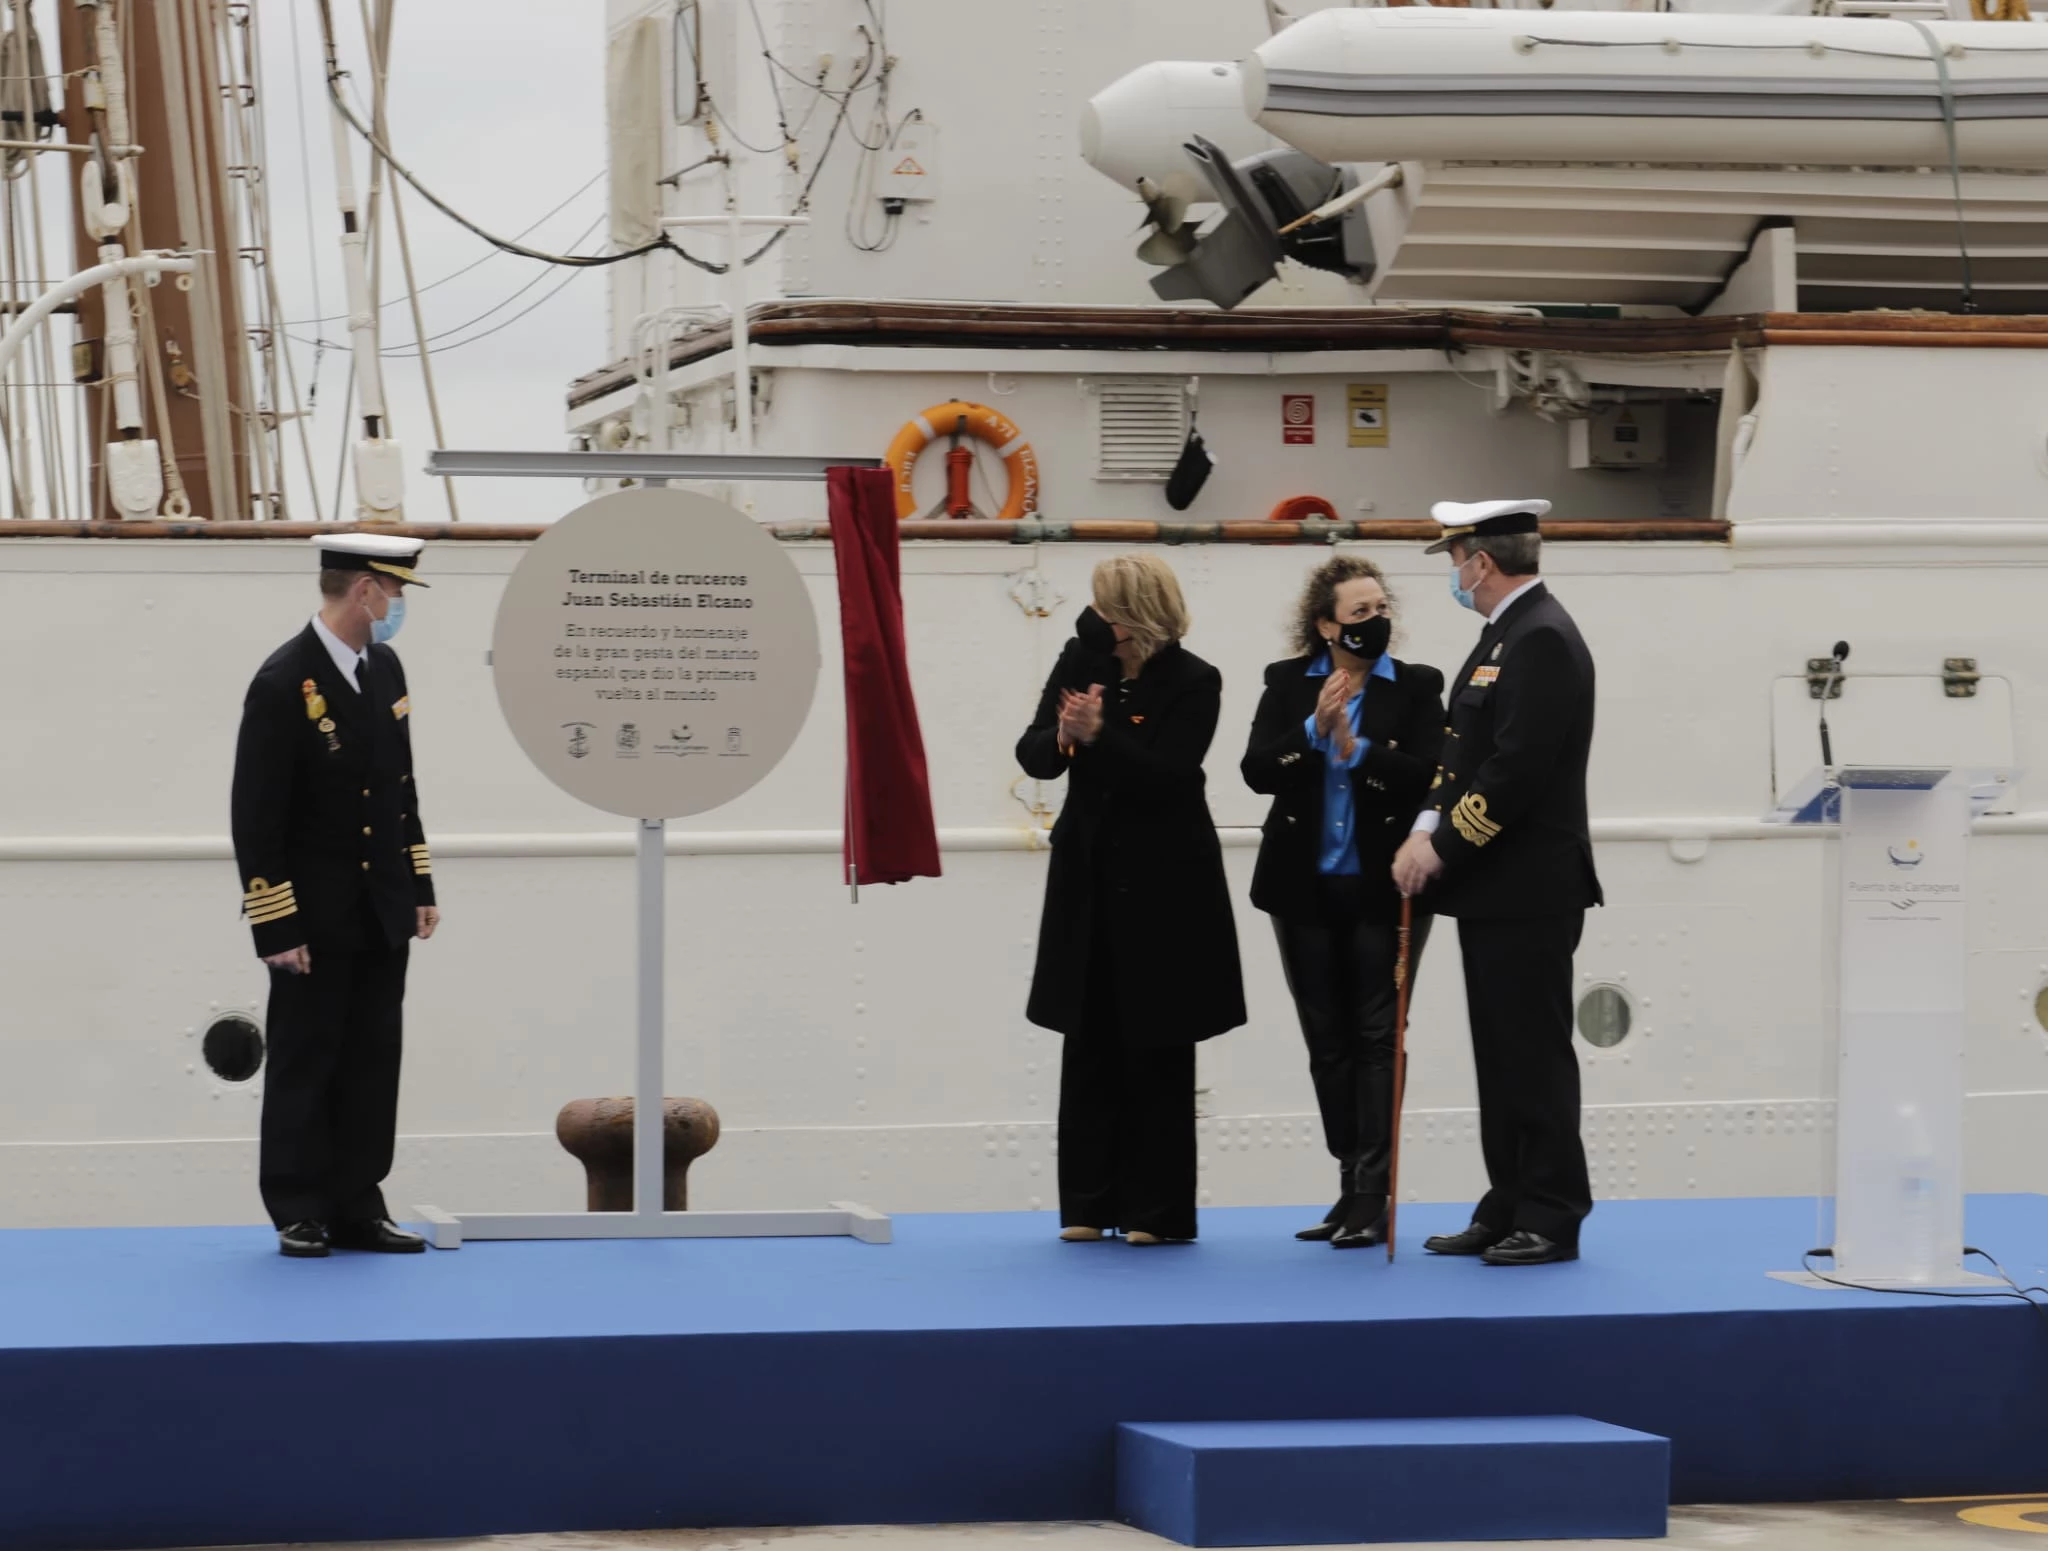  
Alocución del Almirante de Acción Marítima con motivo de la denominación de la terminal de cruceros “Juan Sebastián de Elcano”